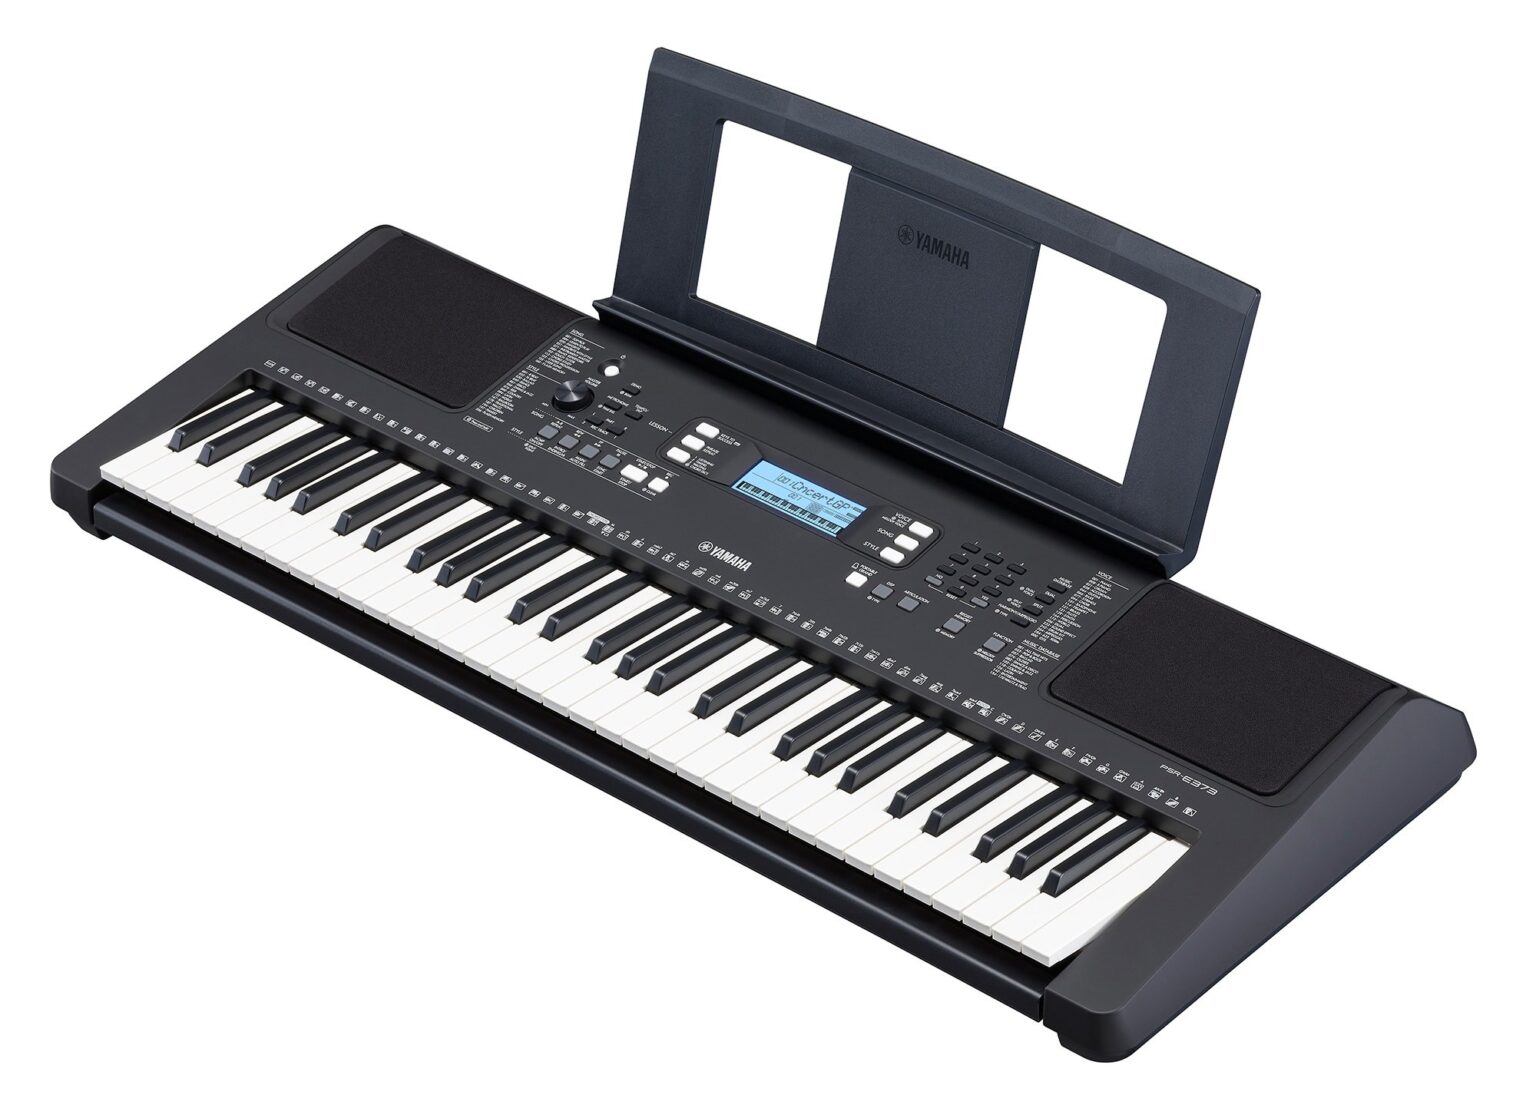 YAMAHA PSR-E373 Portable Keyboard